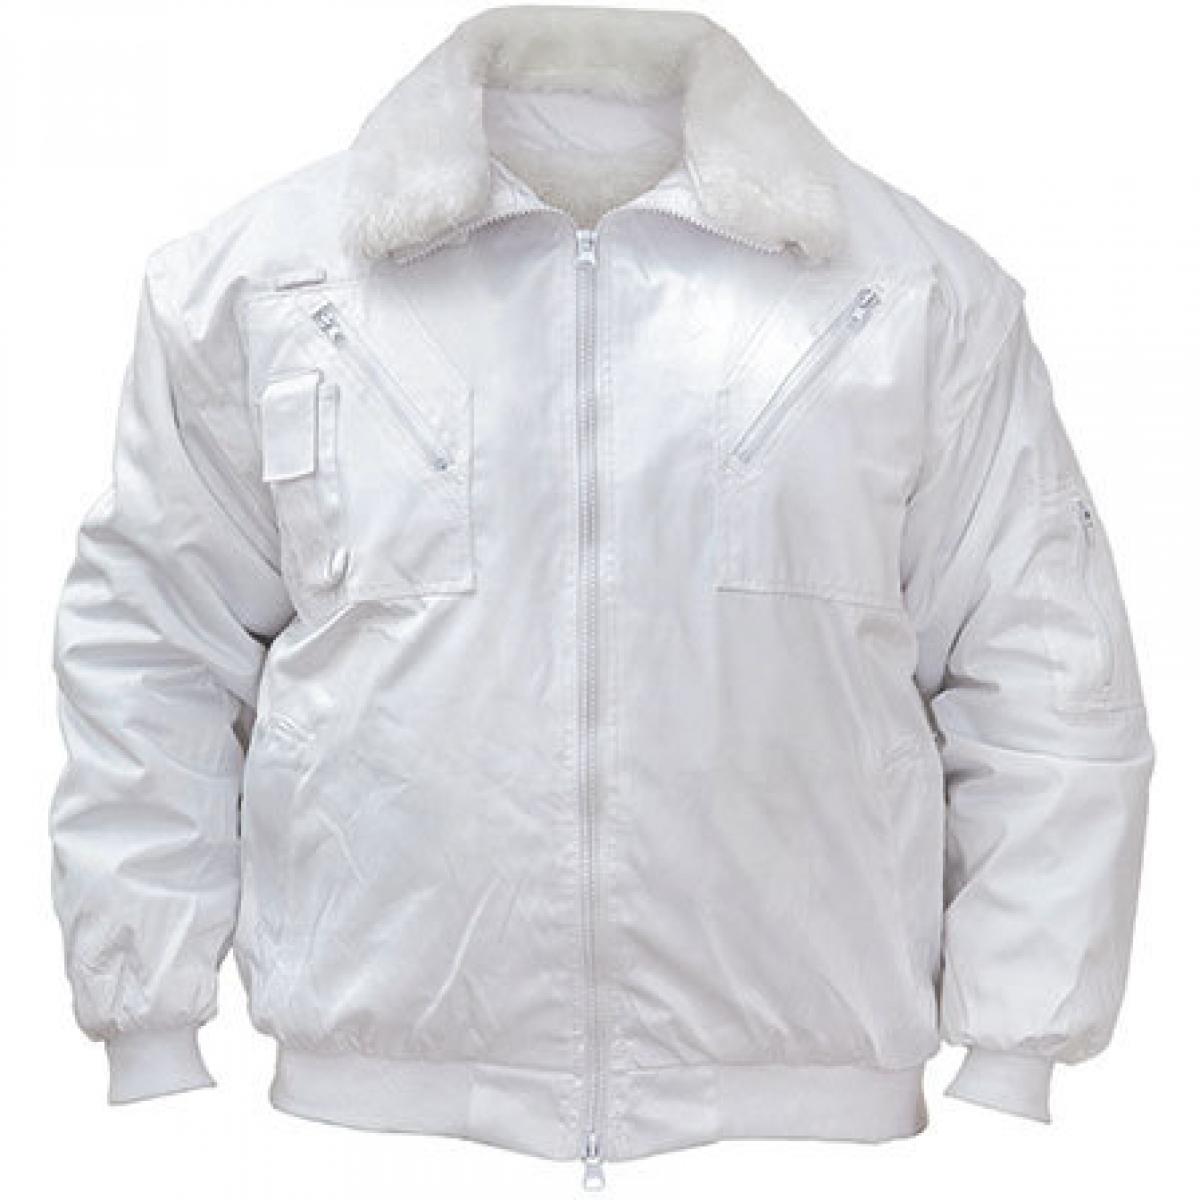 Hersteller: Korntex Herstellernummer: KXPJ Artikelbezeichnung: Pilot Jacket, Vier-in-eins Pilotenjacke Farbe: White